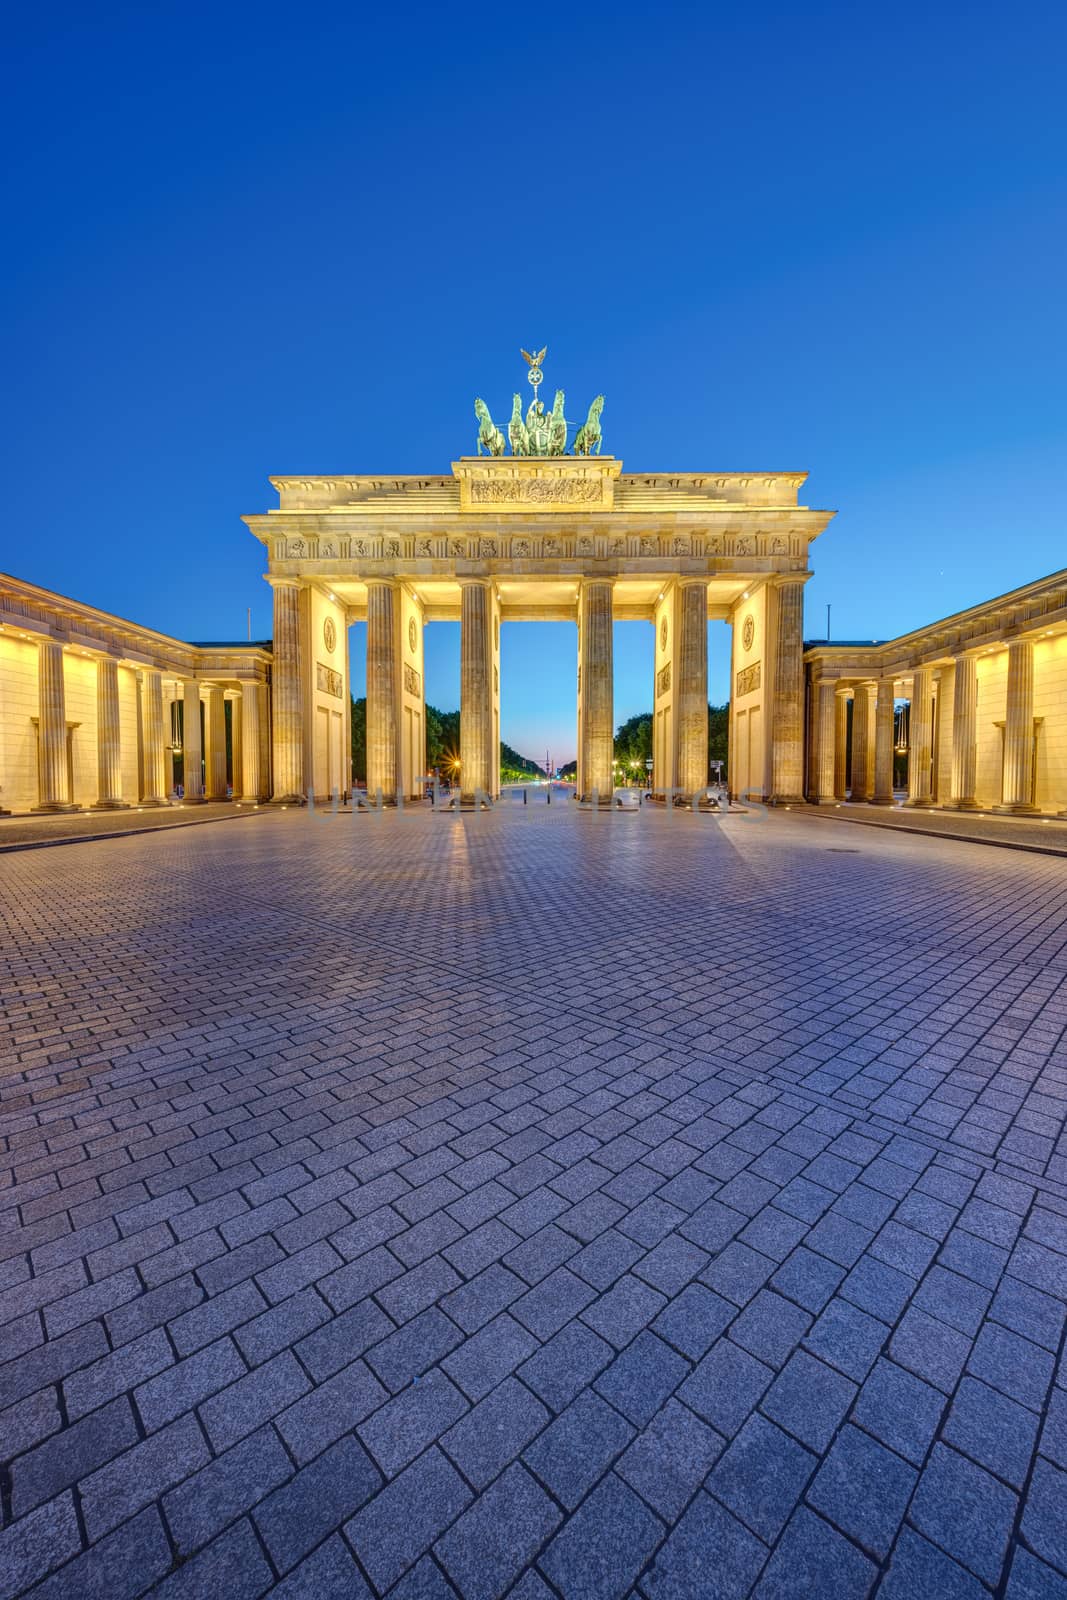 The illuminated Brandenburg Gate in Berlin by elxeneize